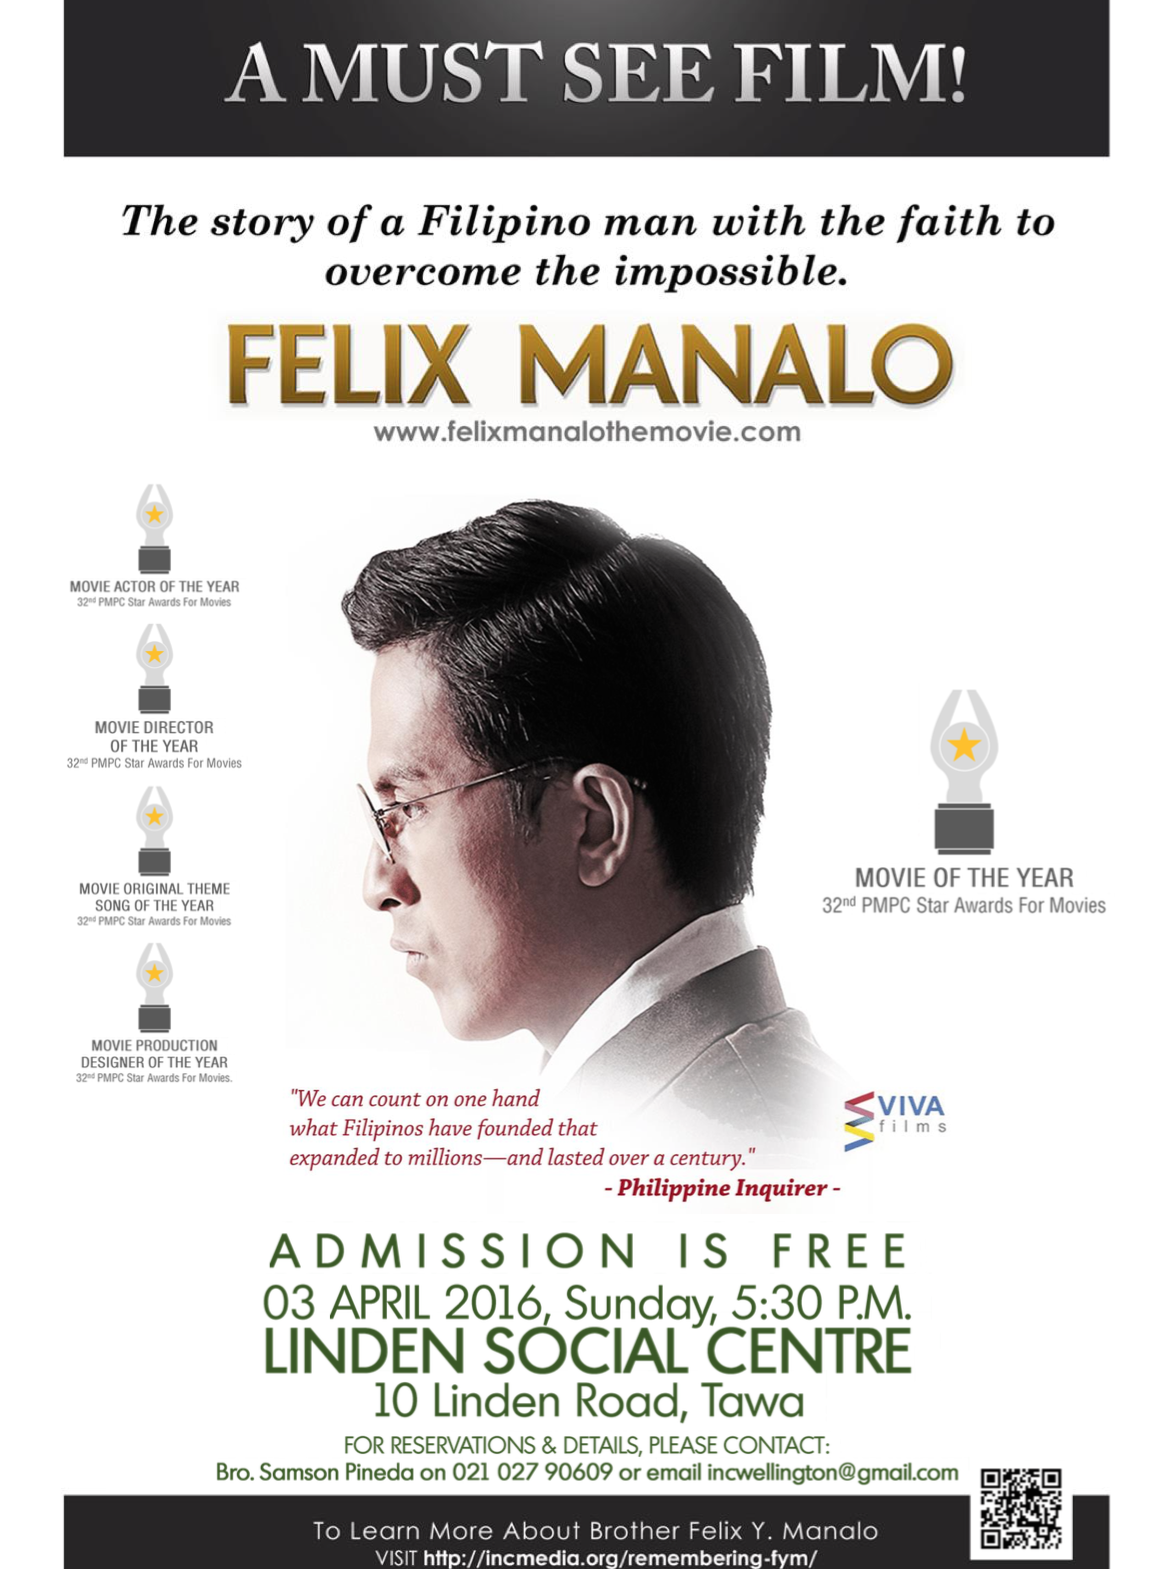 Felix manalo movie box office results - experienceloxa